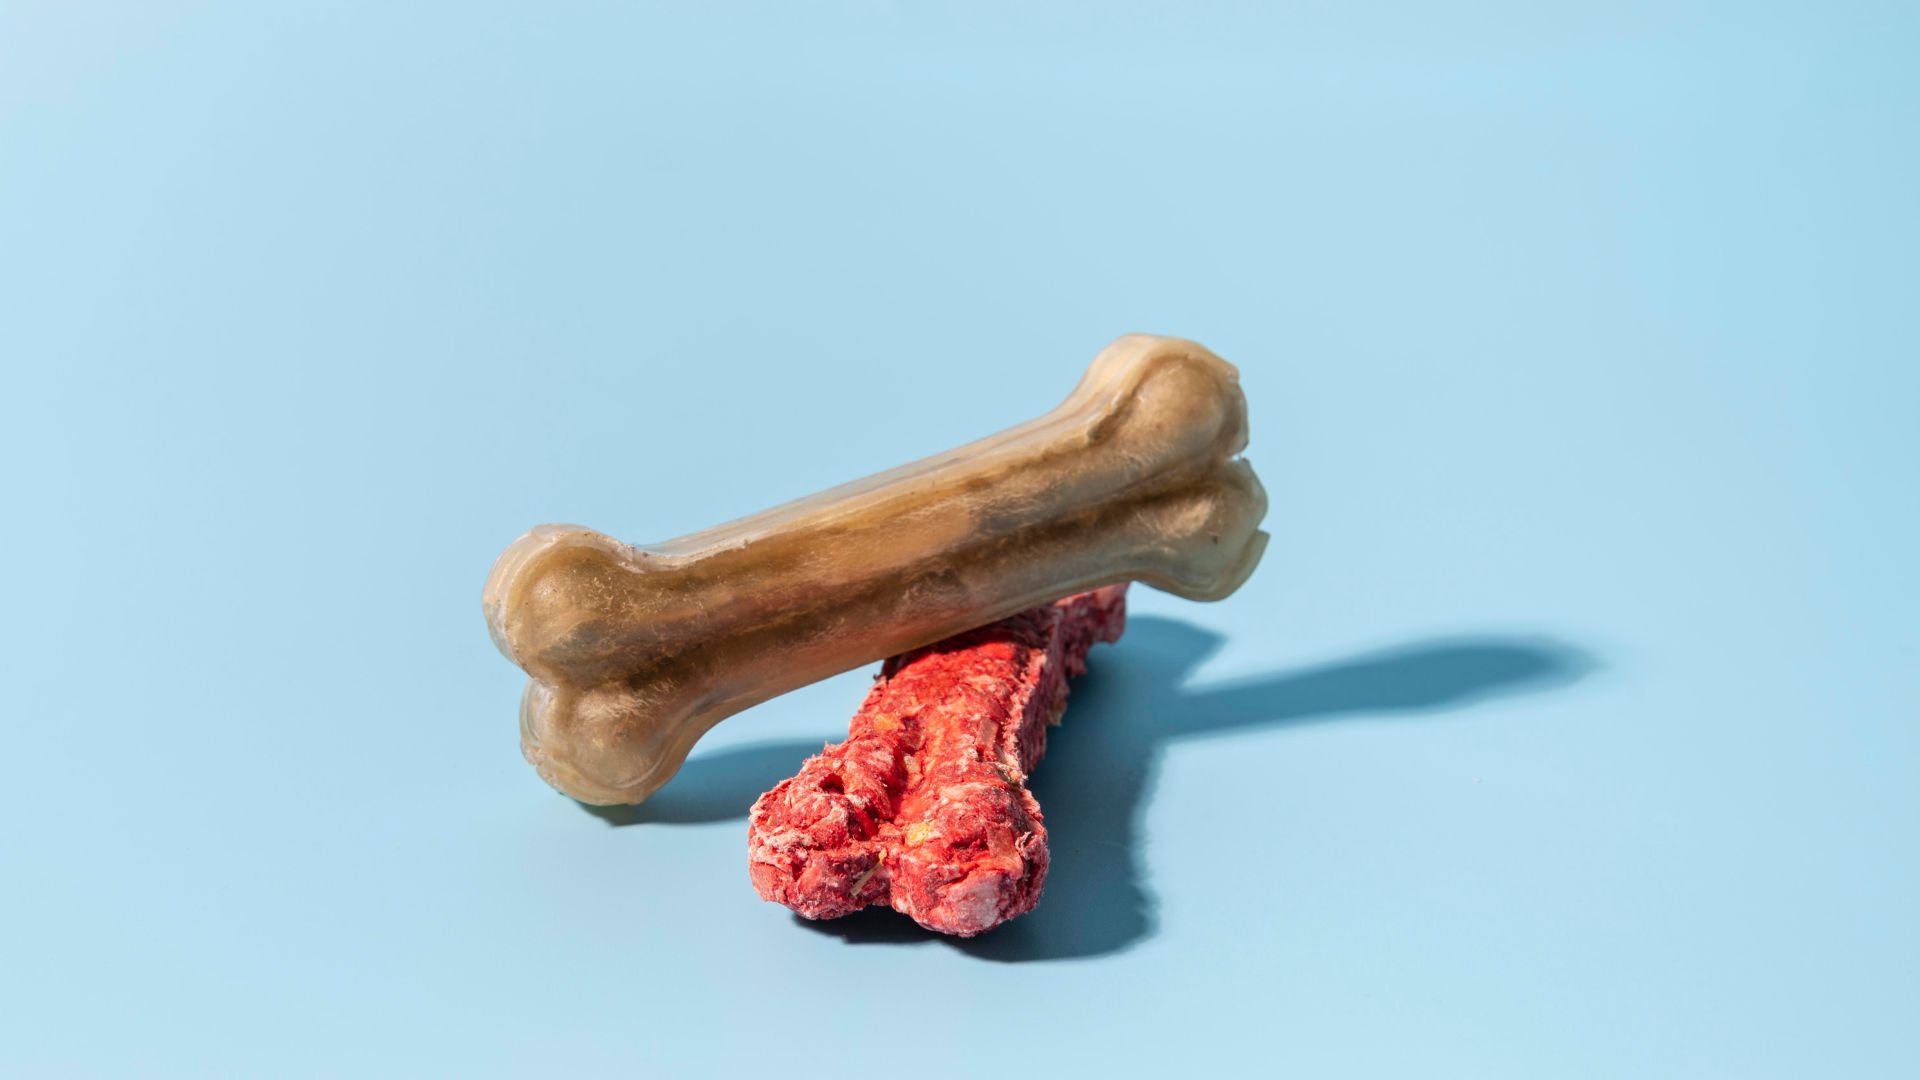 Human-bones-vs-animal-bones-how-to-identify